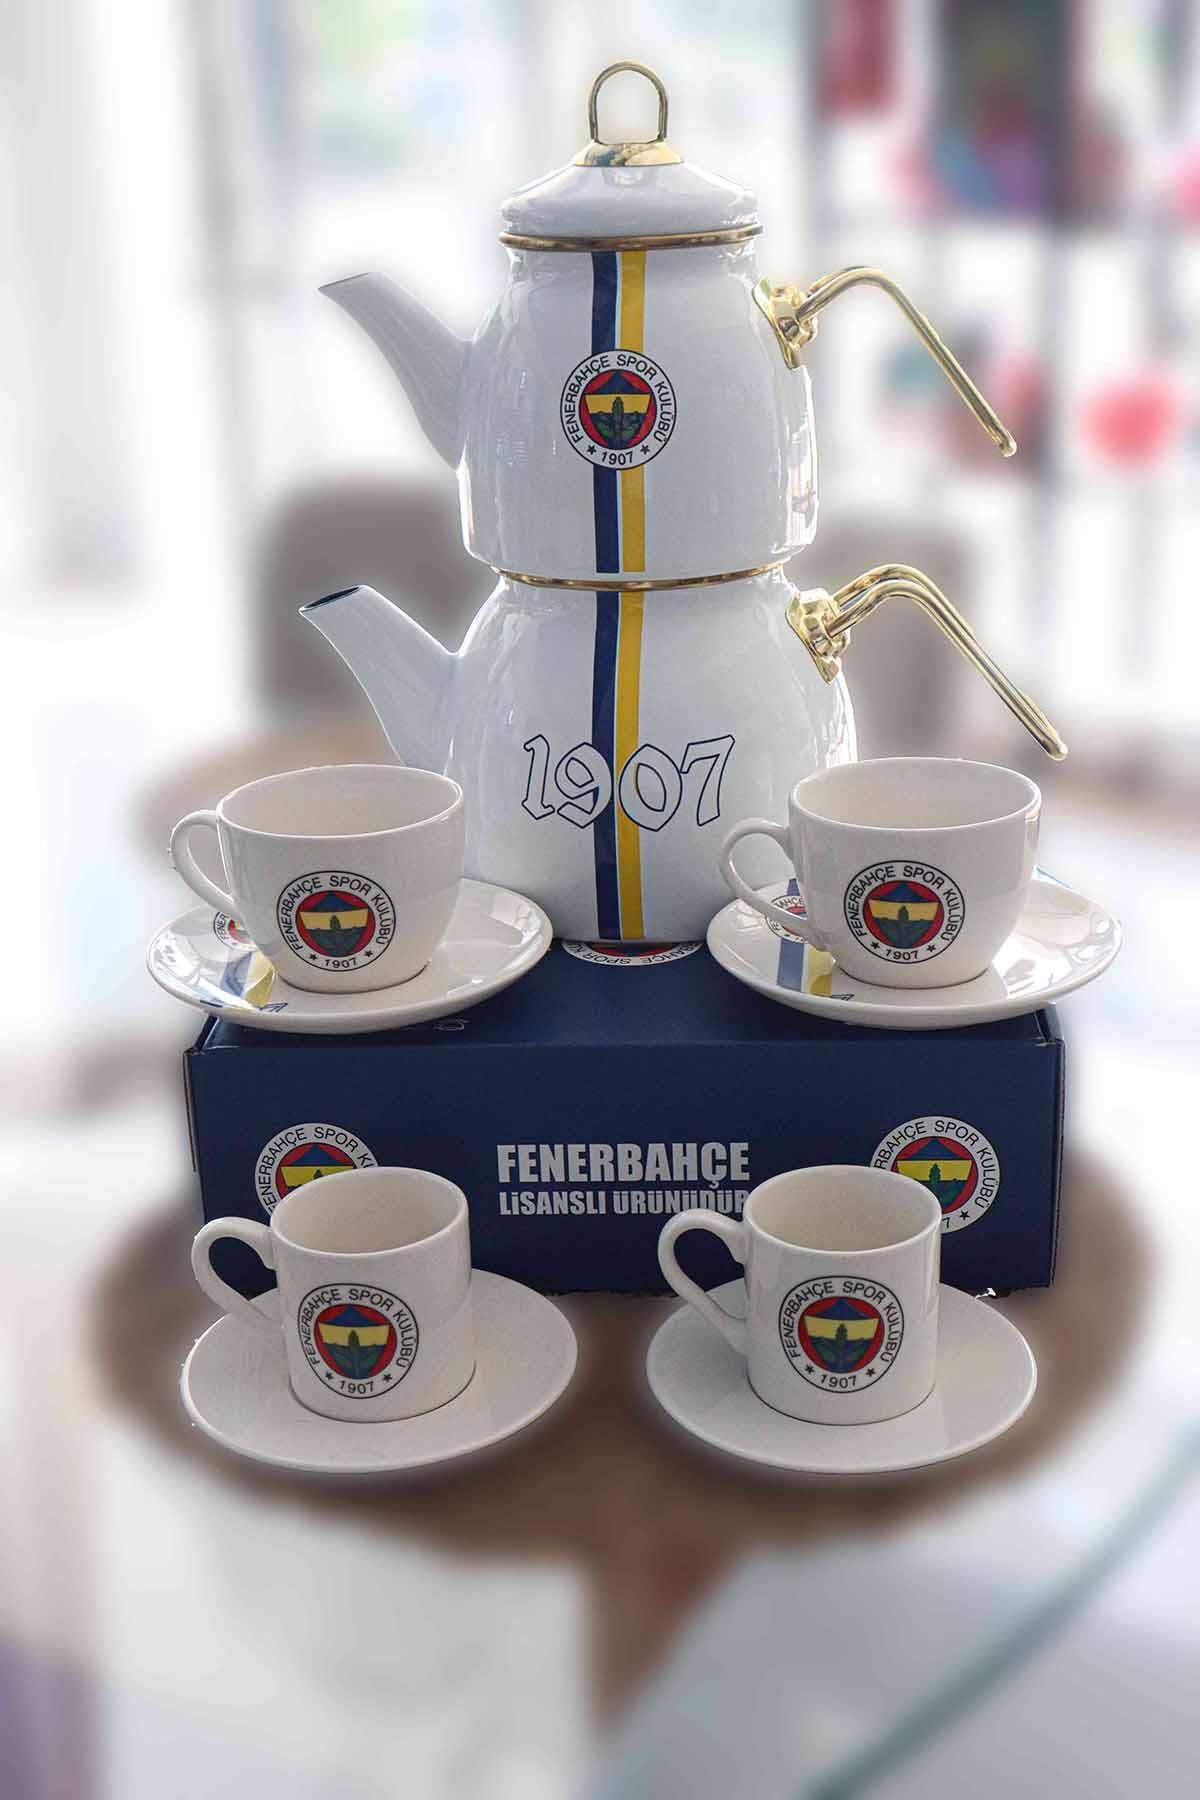 Fenerbahçe DEKOMUS İLE LİSANSLI FENERBAHÇE 2 KİŞİLİK KAHVE VE ÇAY FİNCAN TAKIMI SETİ